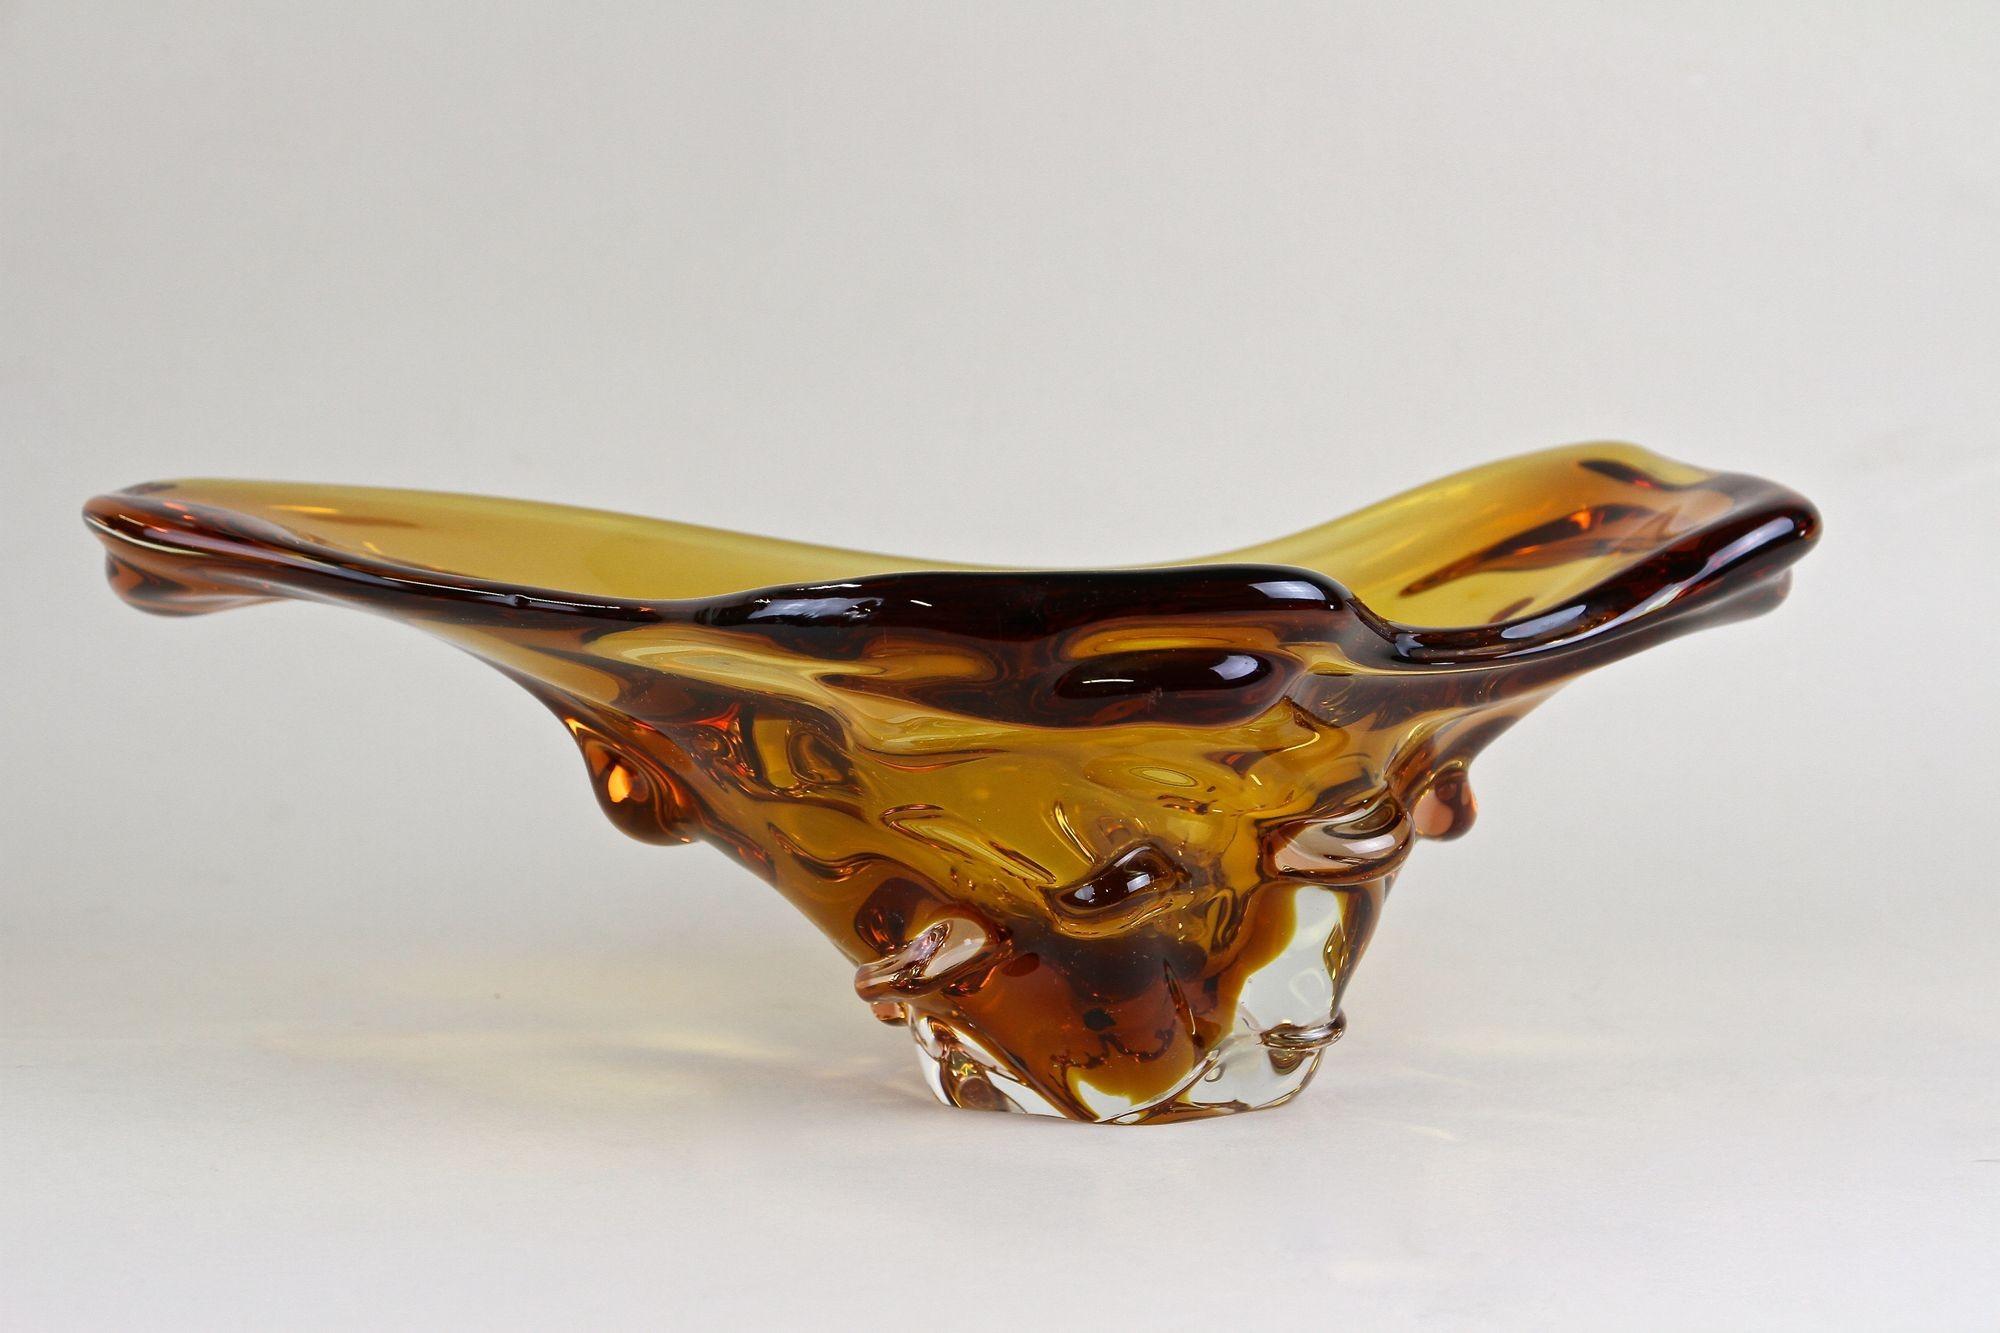 Außergewöhnliche Murano-Glasschale aus den berühmten Werkstätten in Italien aus der Zeit um 1960/70. Diese sehr ungewöhnlich geformte, zeitgenössische Glasschale in einem schönen Bernstein-Braun-Ton besticht durch ihr erstaunliches Design. Eine